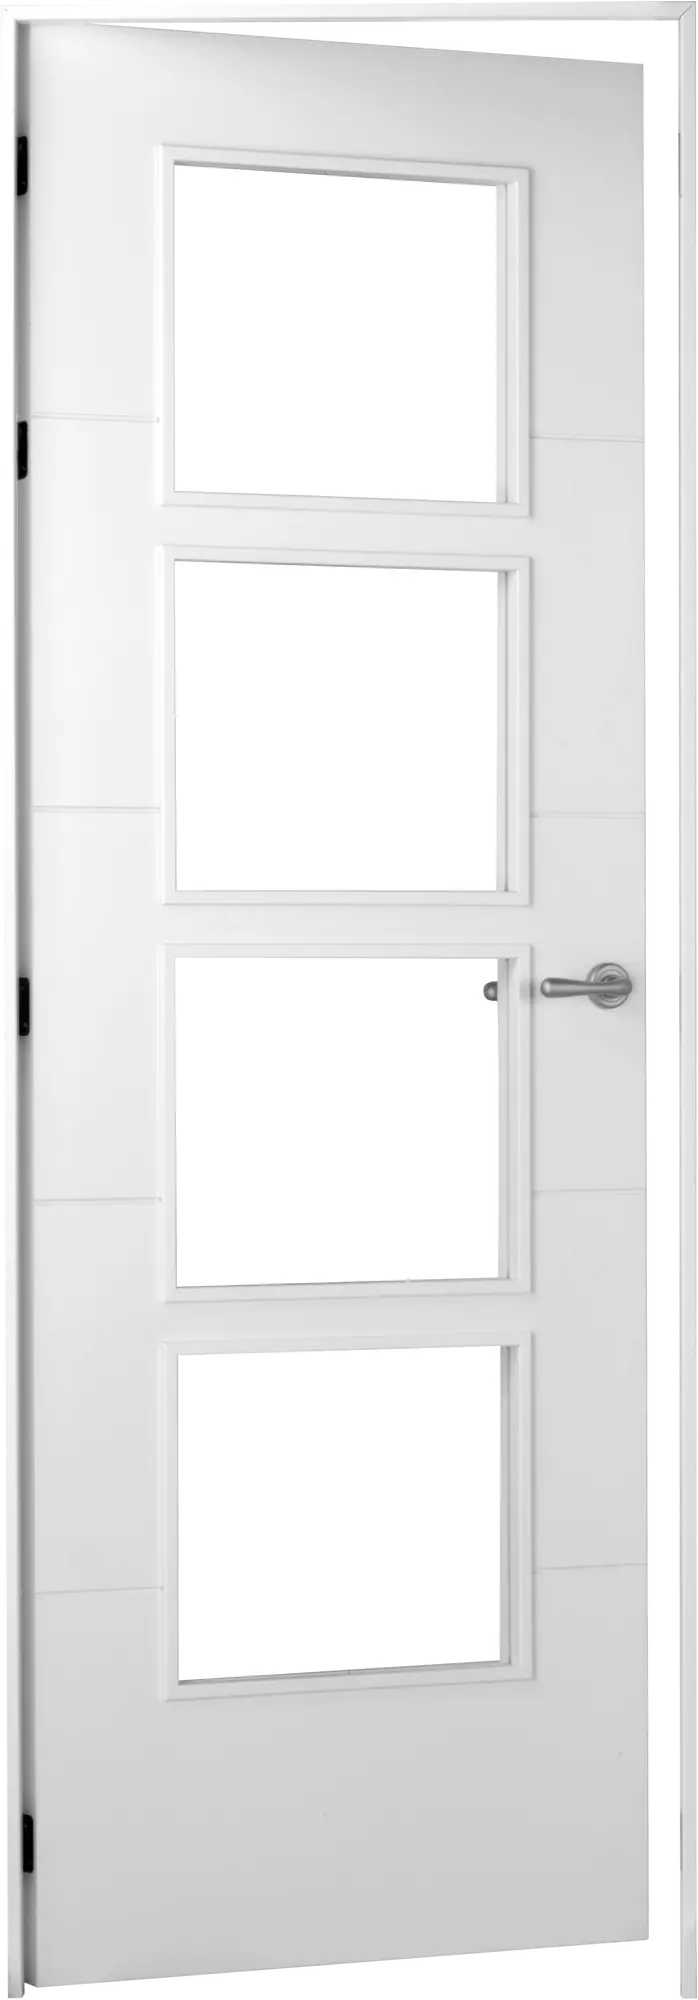 Puerta lucerna plus blanco apertura izquierda con cristal 62.5cm